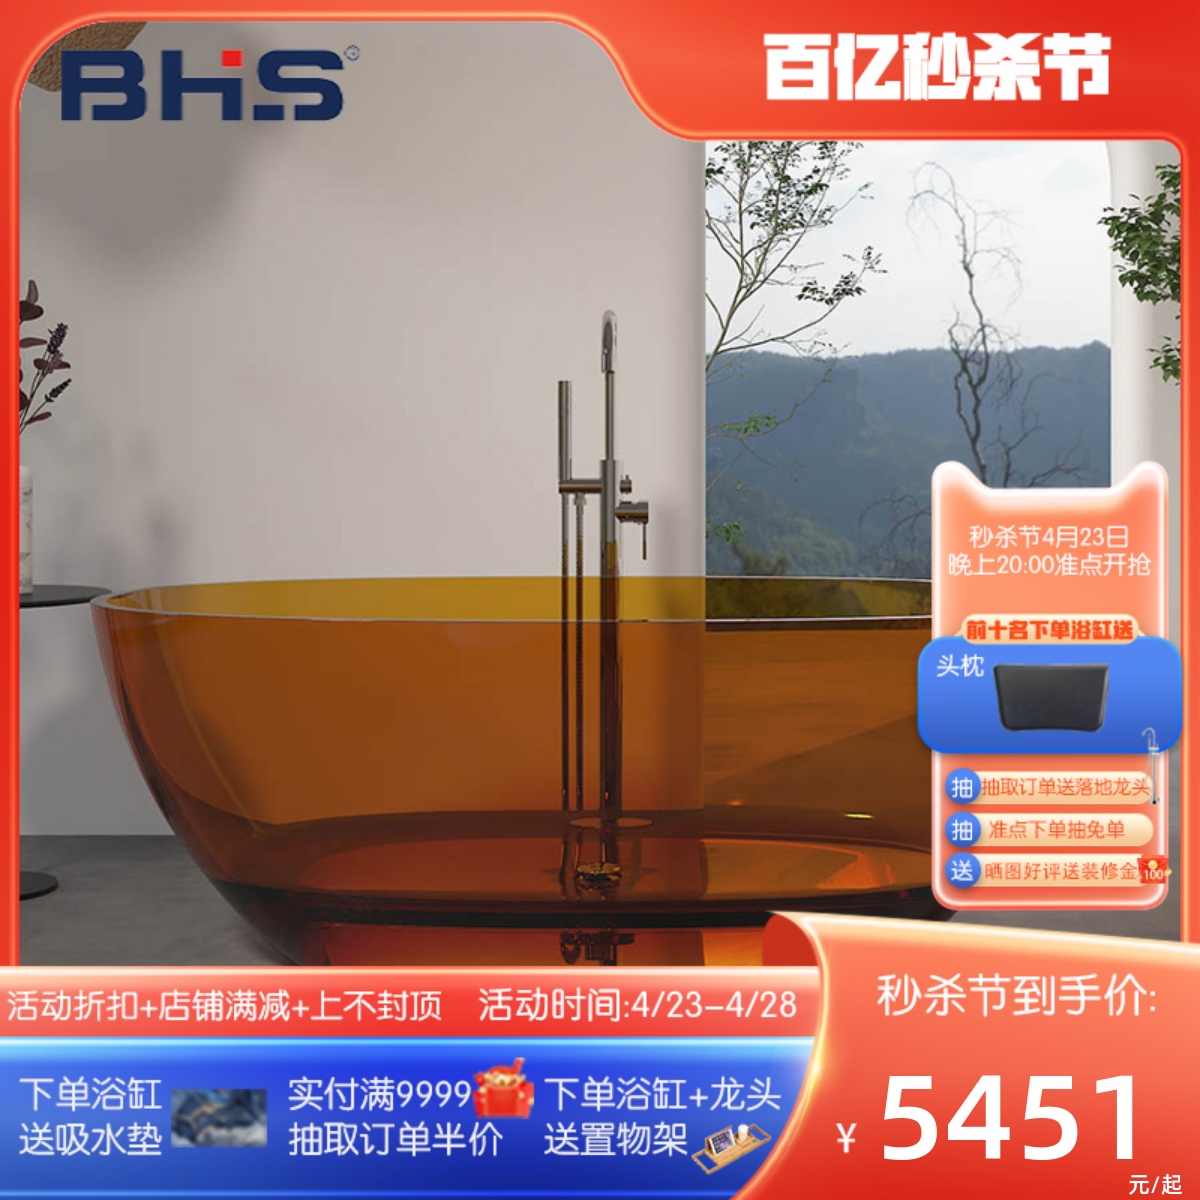 贝鸿斯水晶浴缸彩色透明缸人造石独立式情侣浴缸酒店民宿专用浴盆